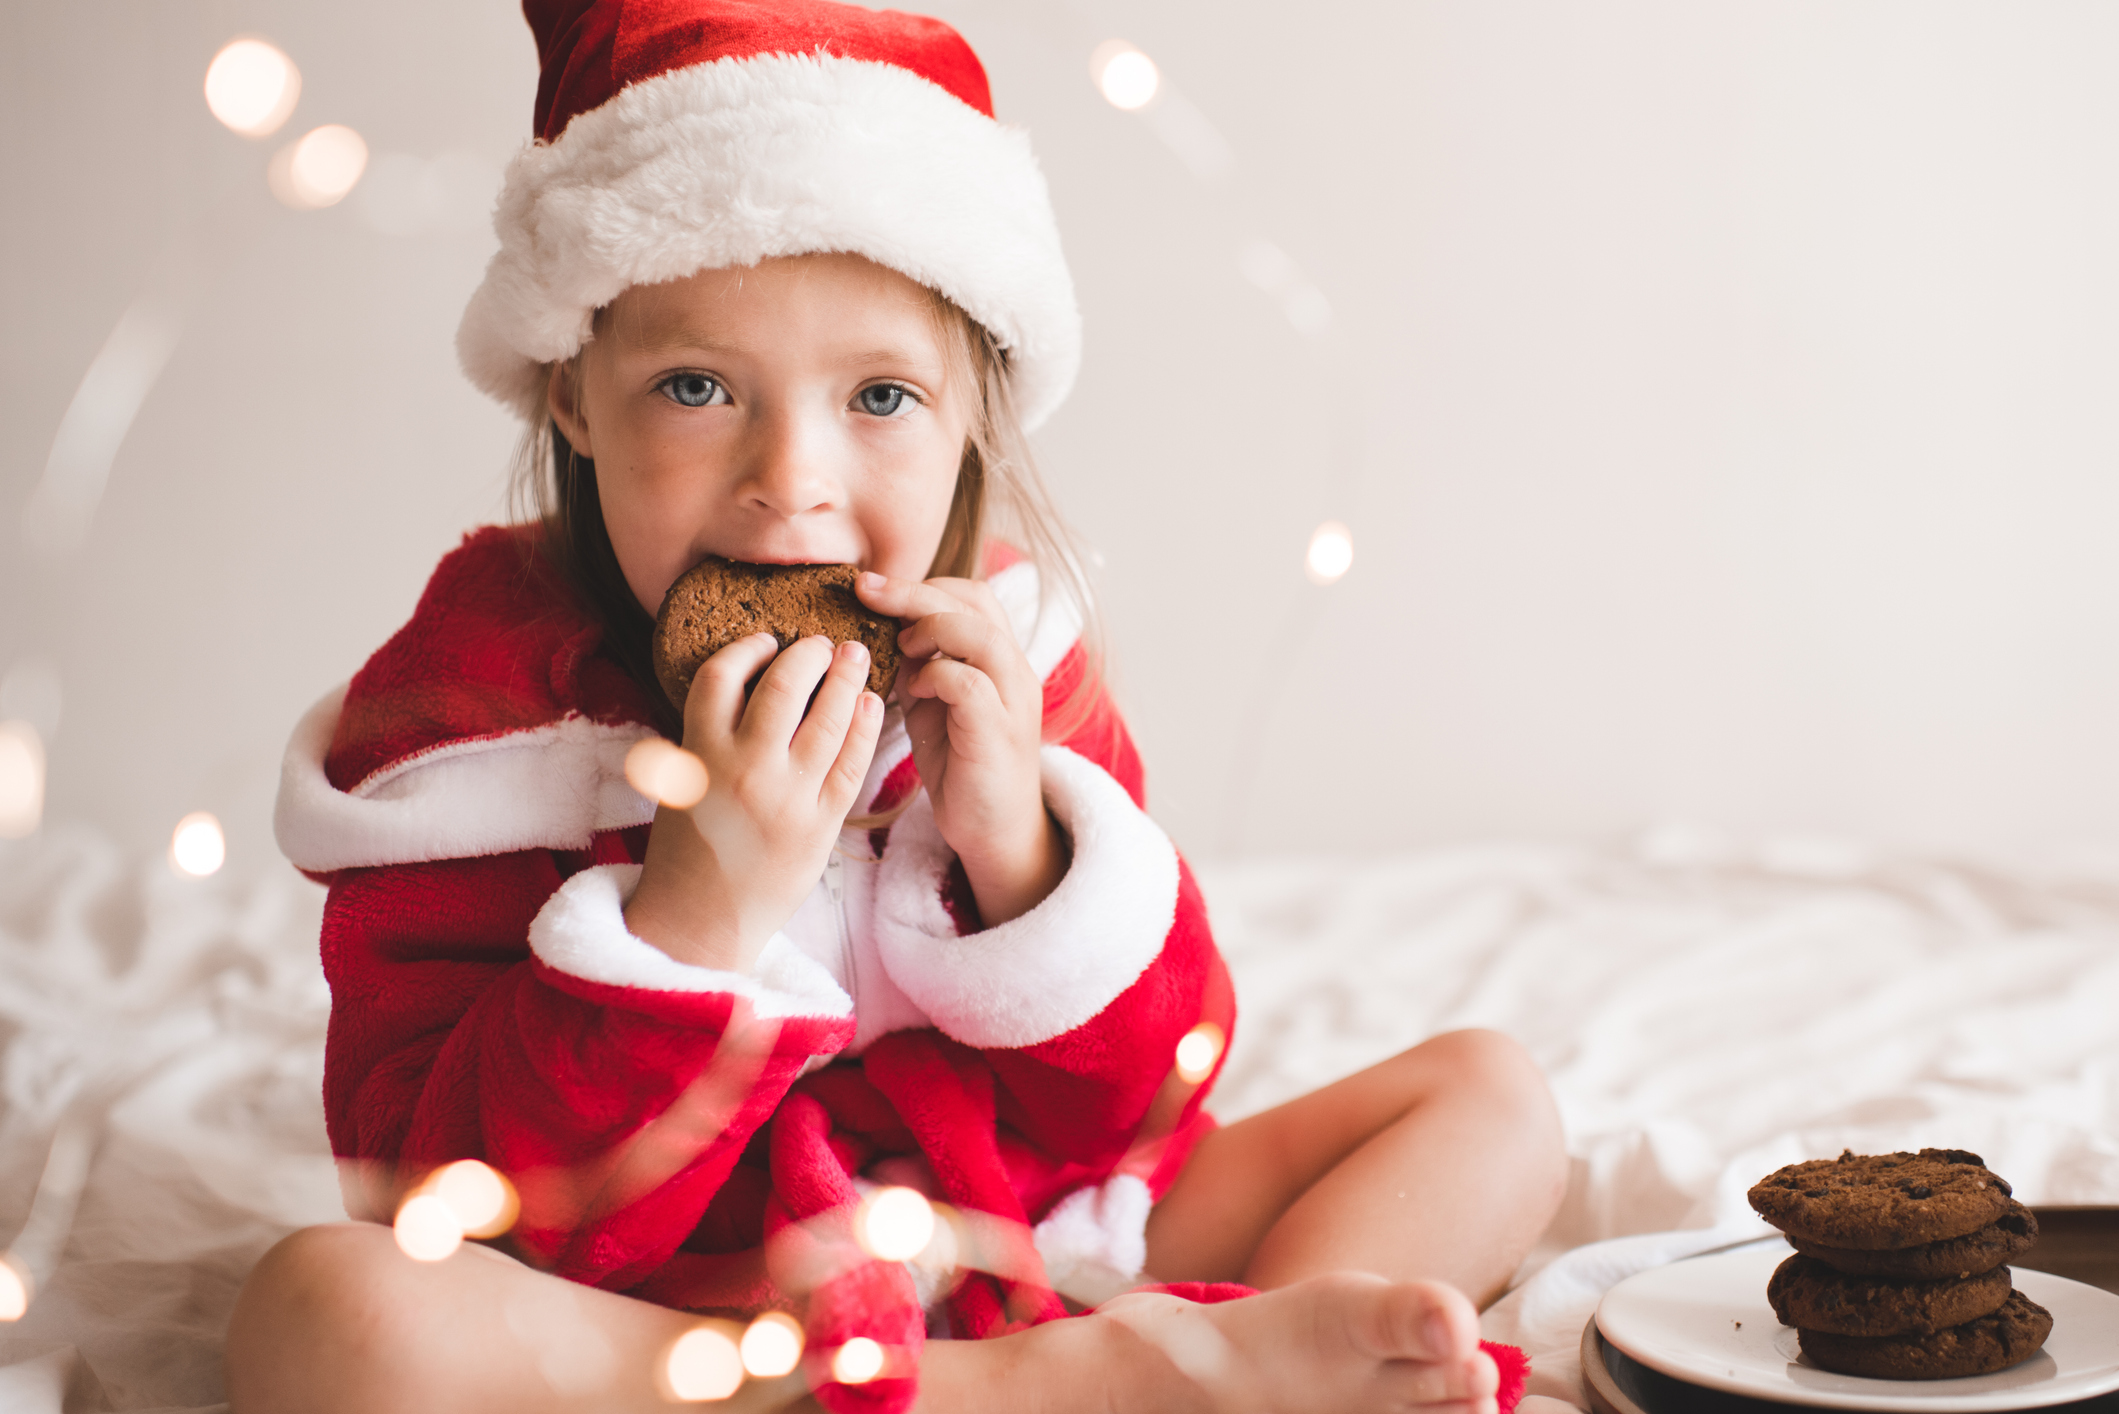 Τα γλυκά των Χριστουγέννων: Μέχρι πόσα επιτρέπεται να φάει ένα παιδί;